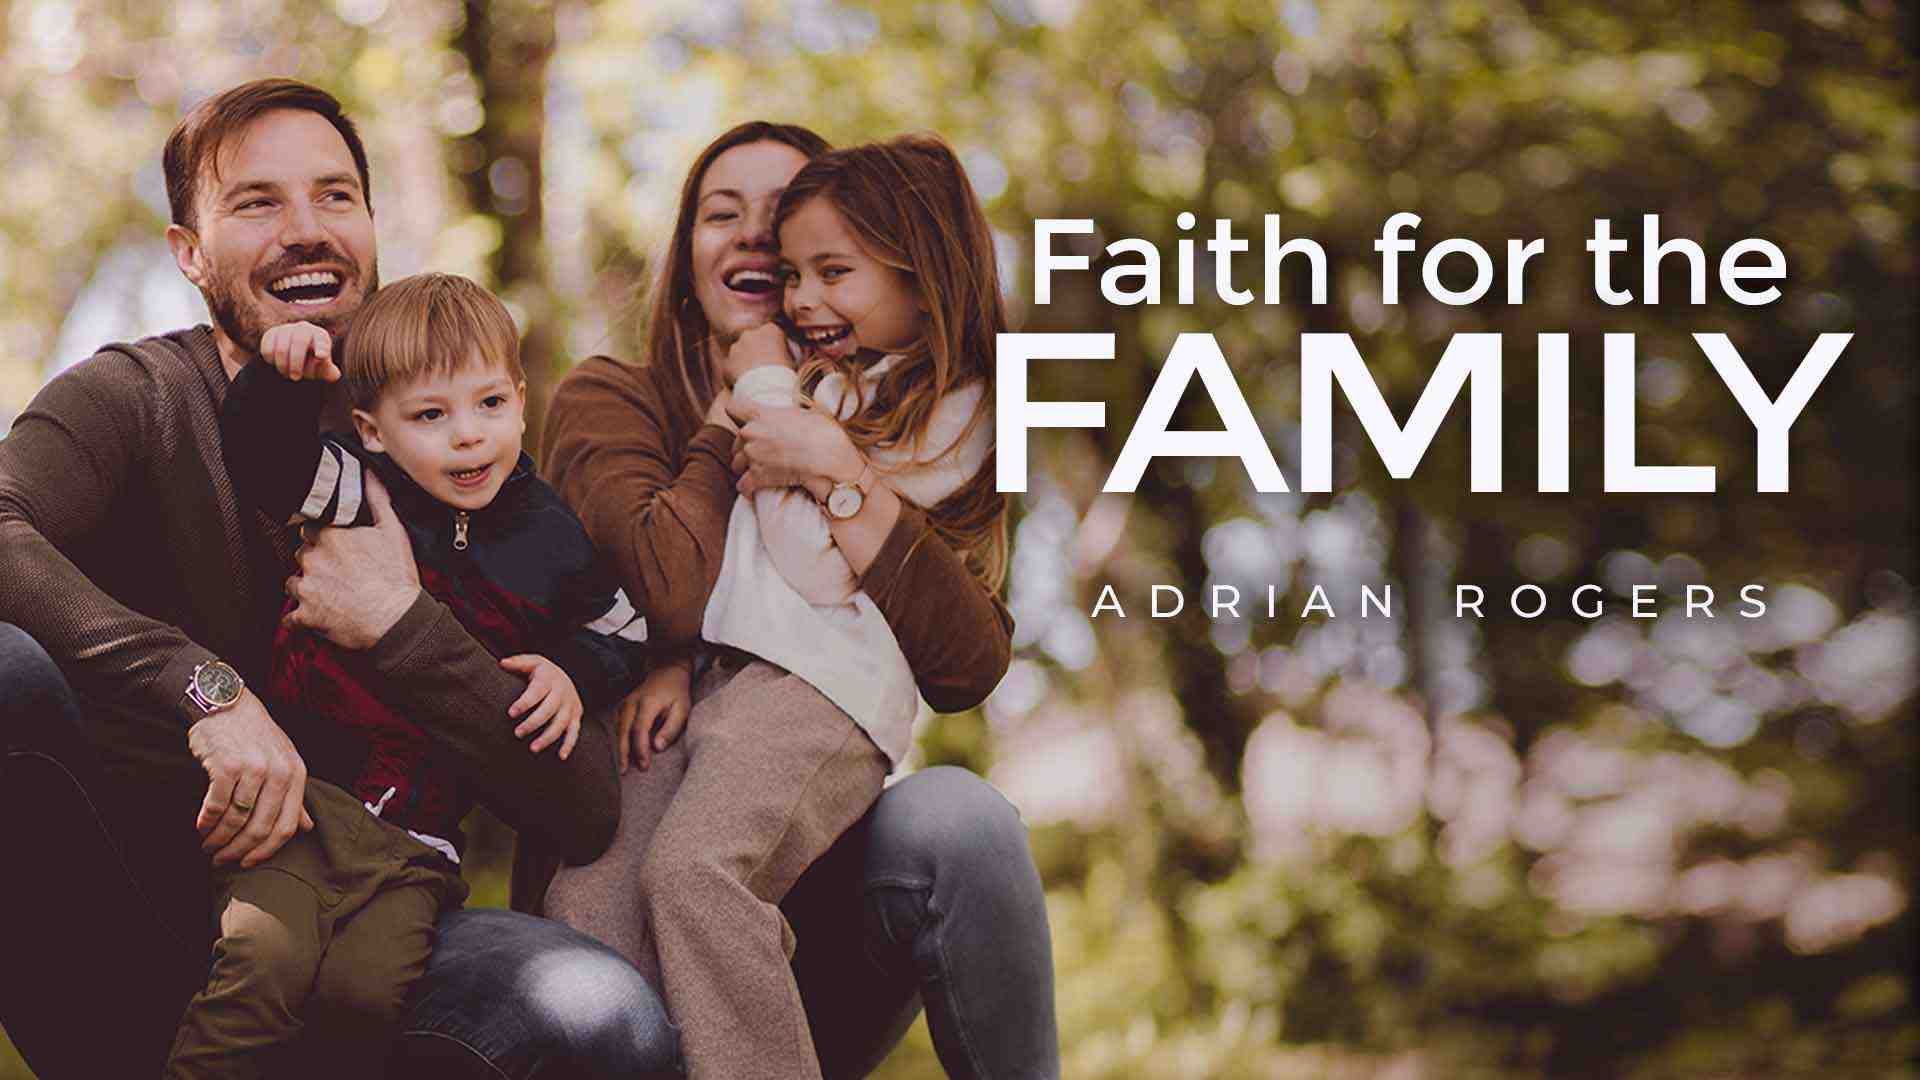 Faith for the Family 1920x1080